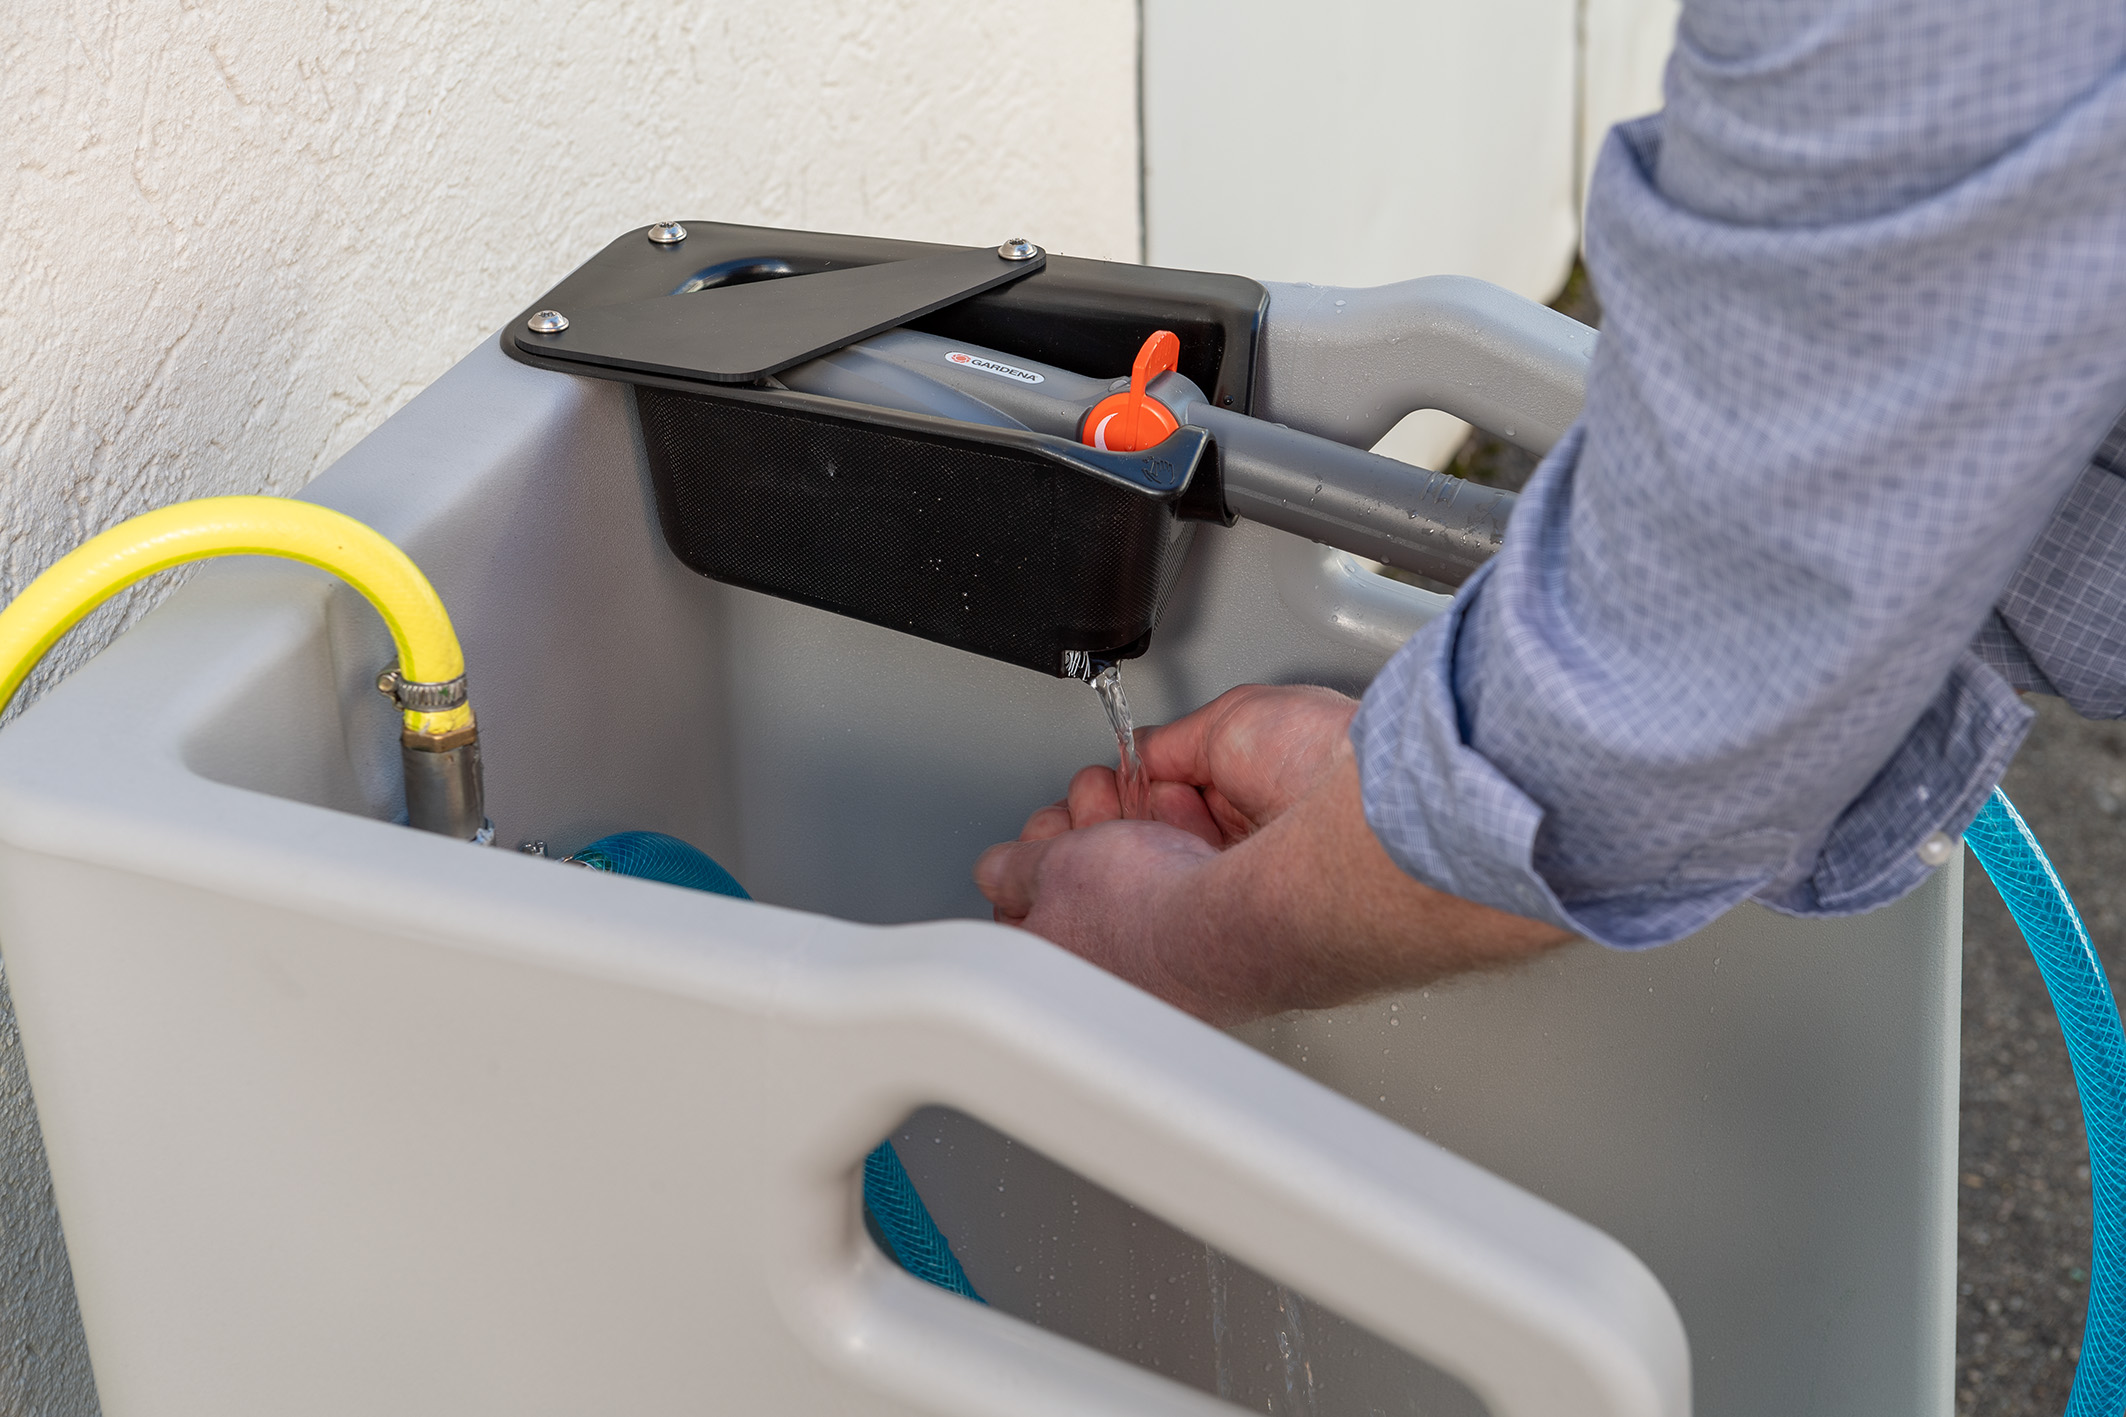 Stiefelreiniger Premium aus PE mit Bürstenhalter und integrierter Handwaschfunktion